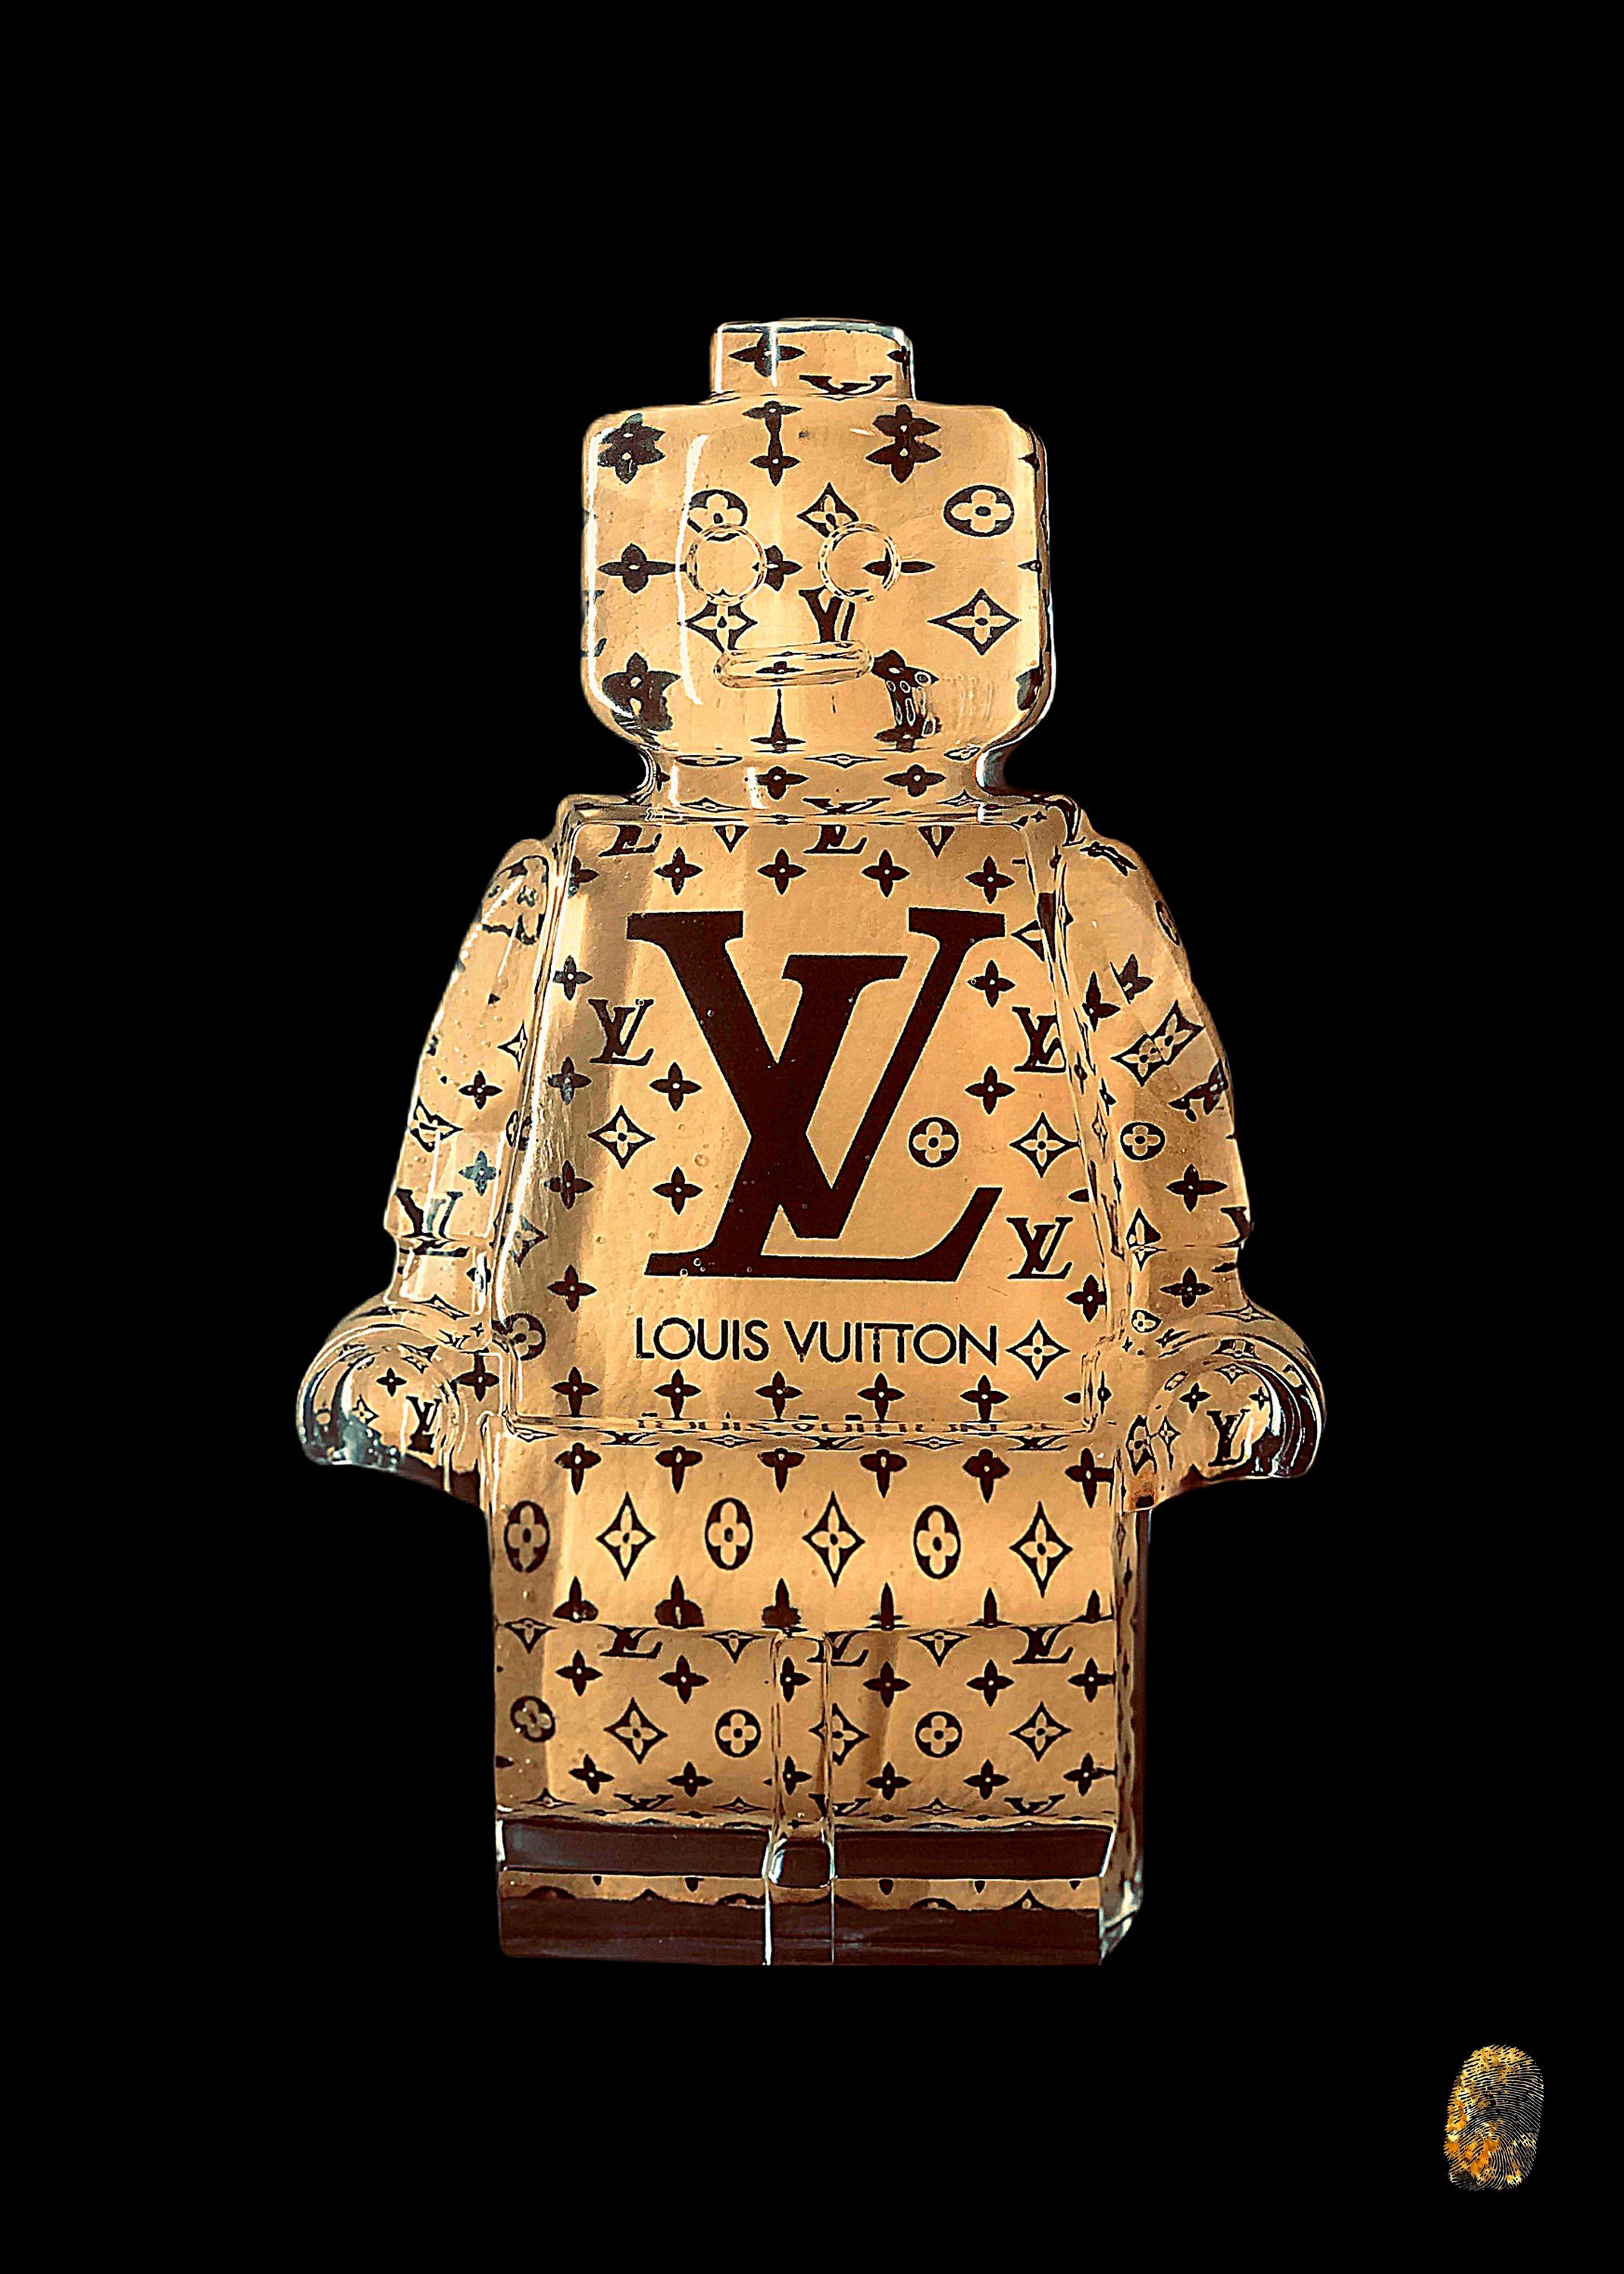 ▷ Vuitton 1 by Vincent Sabatier, 2019, Print